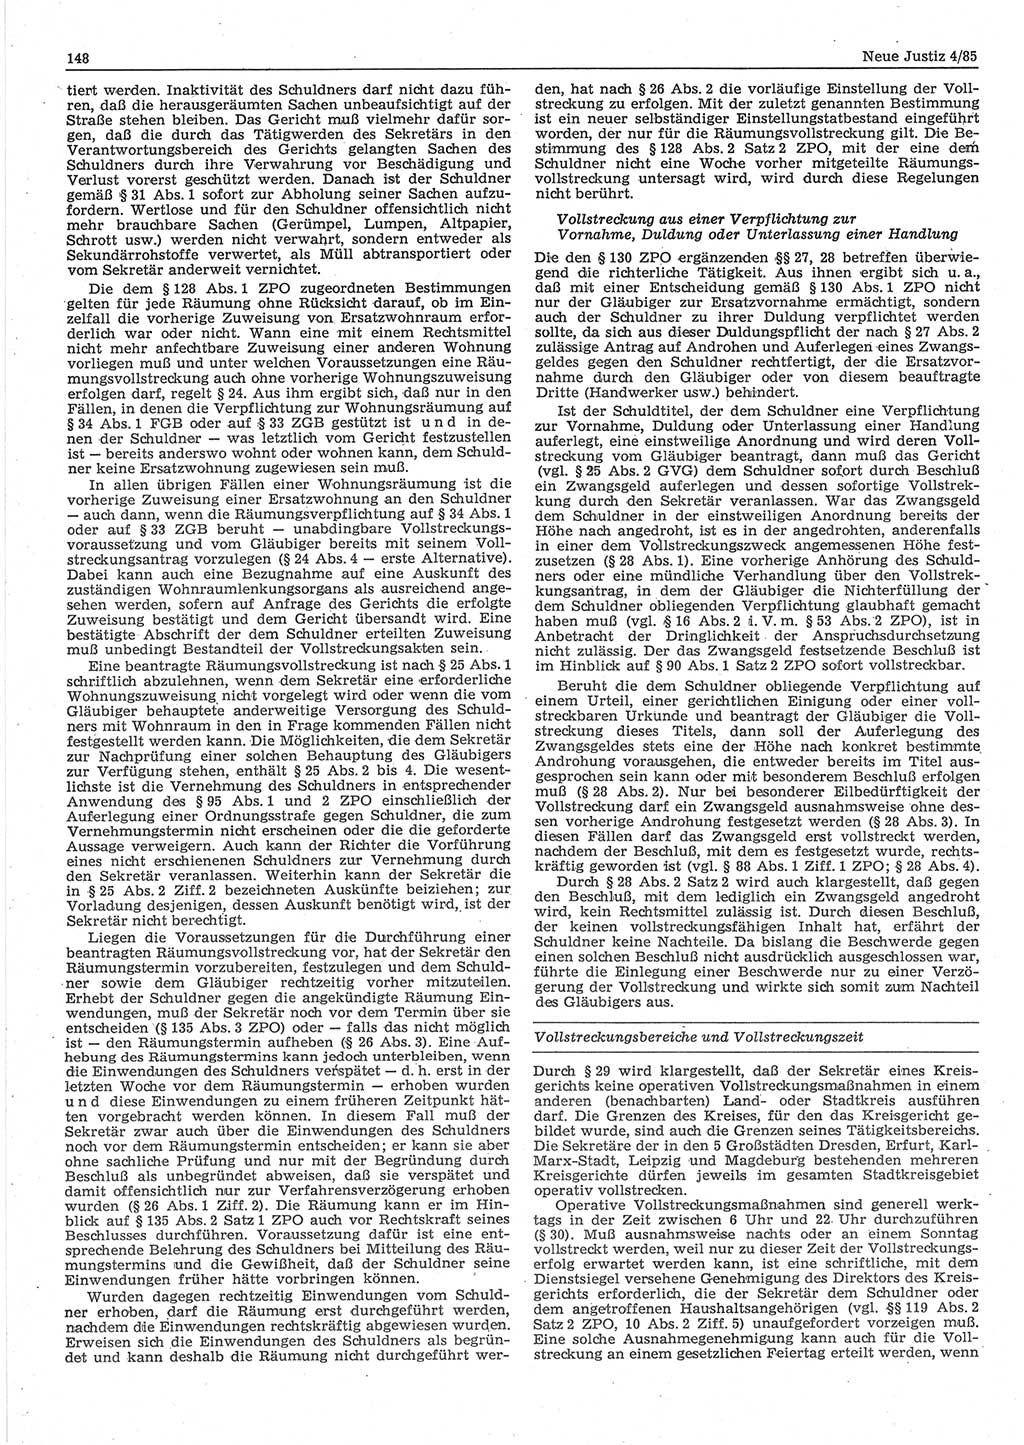 Neue Justiz (NJ), Zeitschrift für sozialistisches Recht und Gesetzlichkeit [Deutsche Demokratische Republik (DDR)], 39. Jahrgang 1985, Seite 148 (NJ DDR 1985, S. 148)